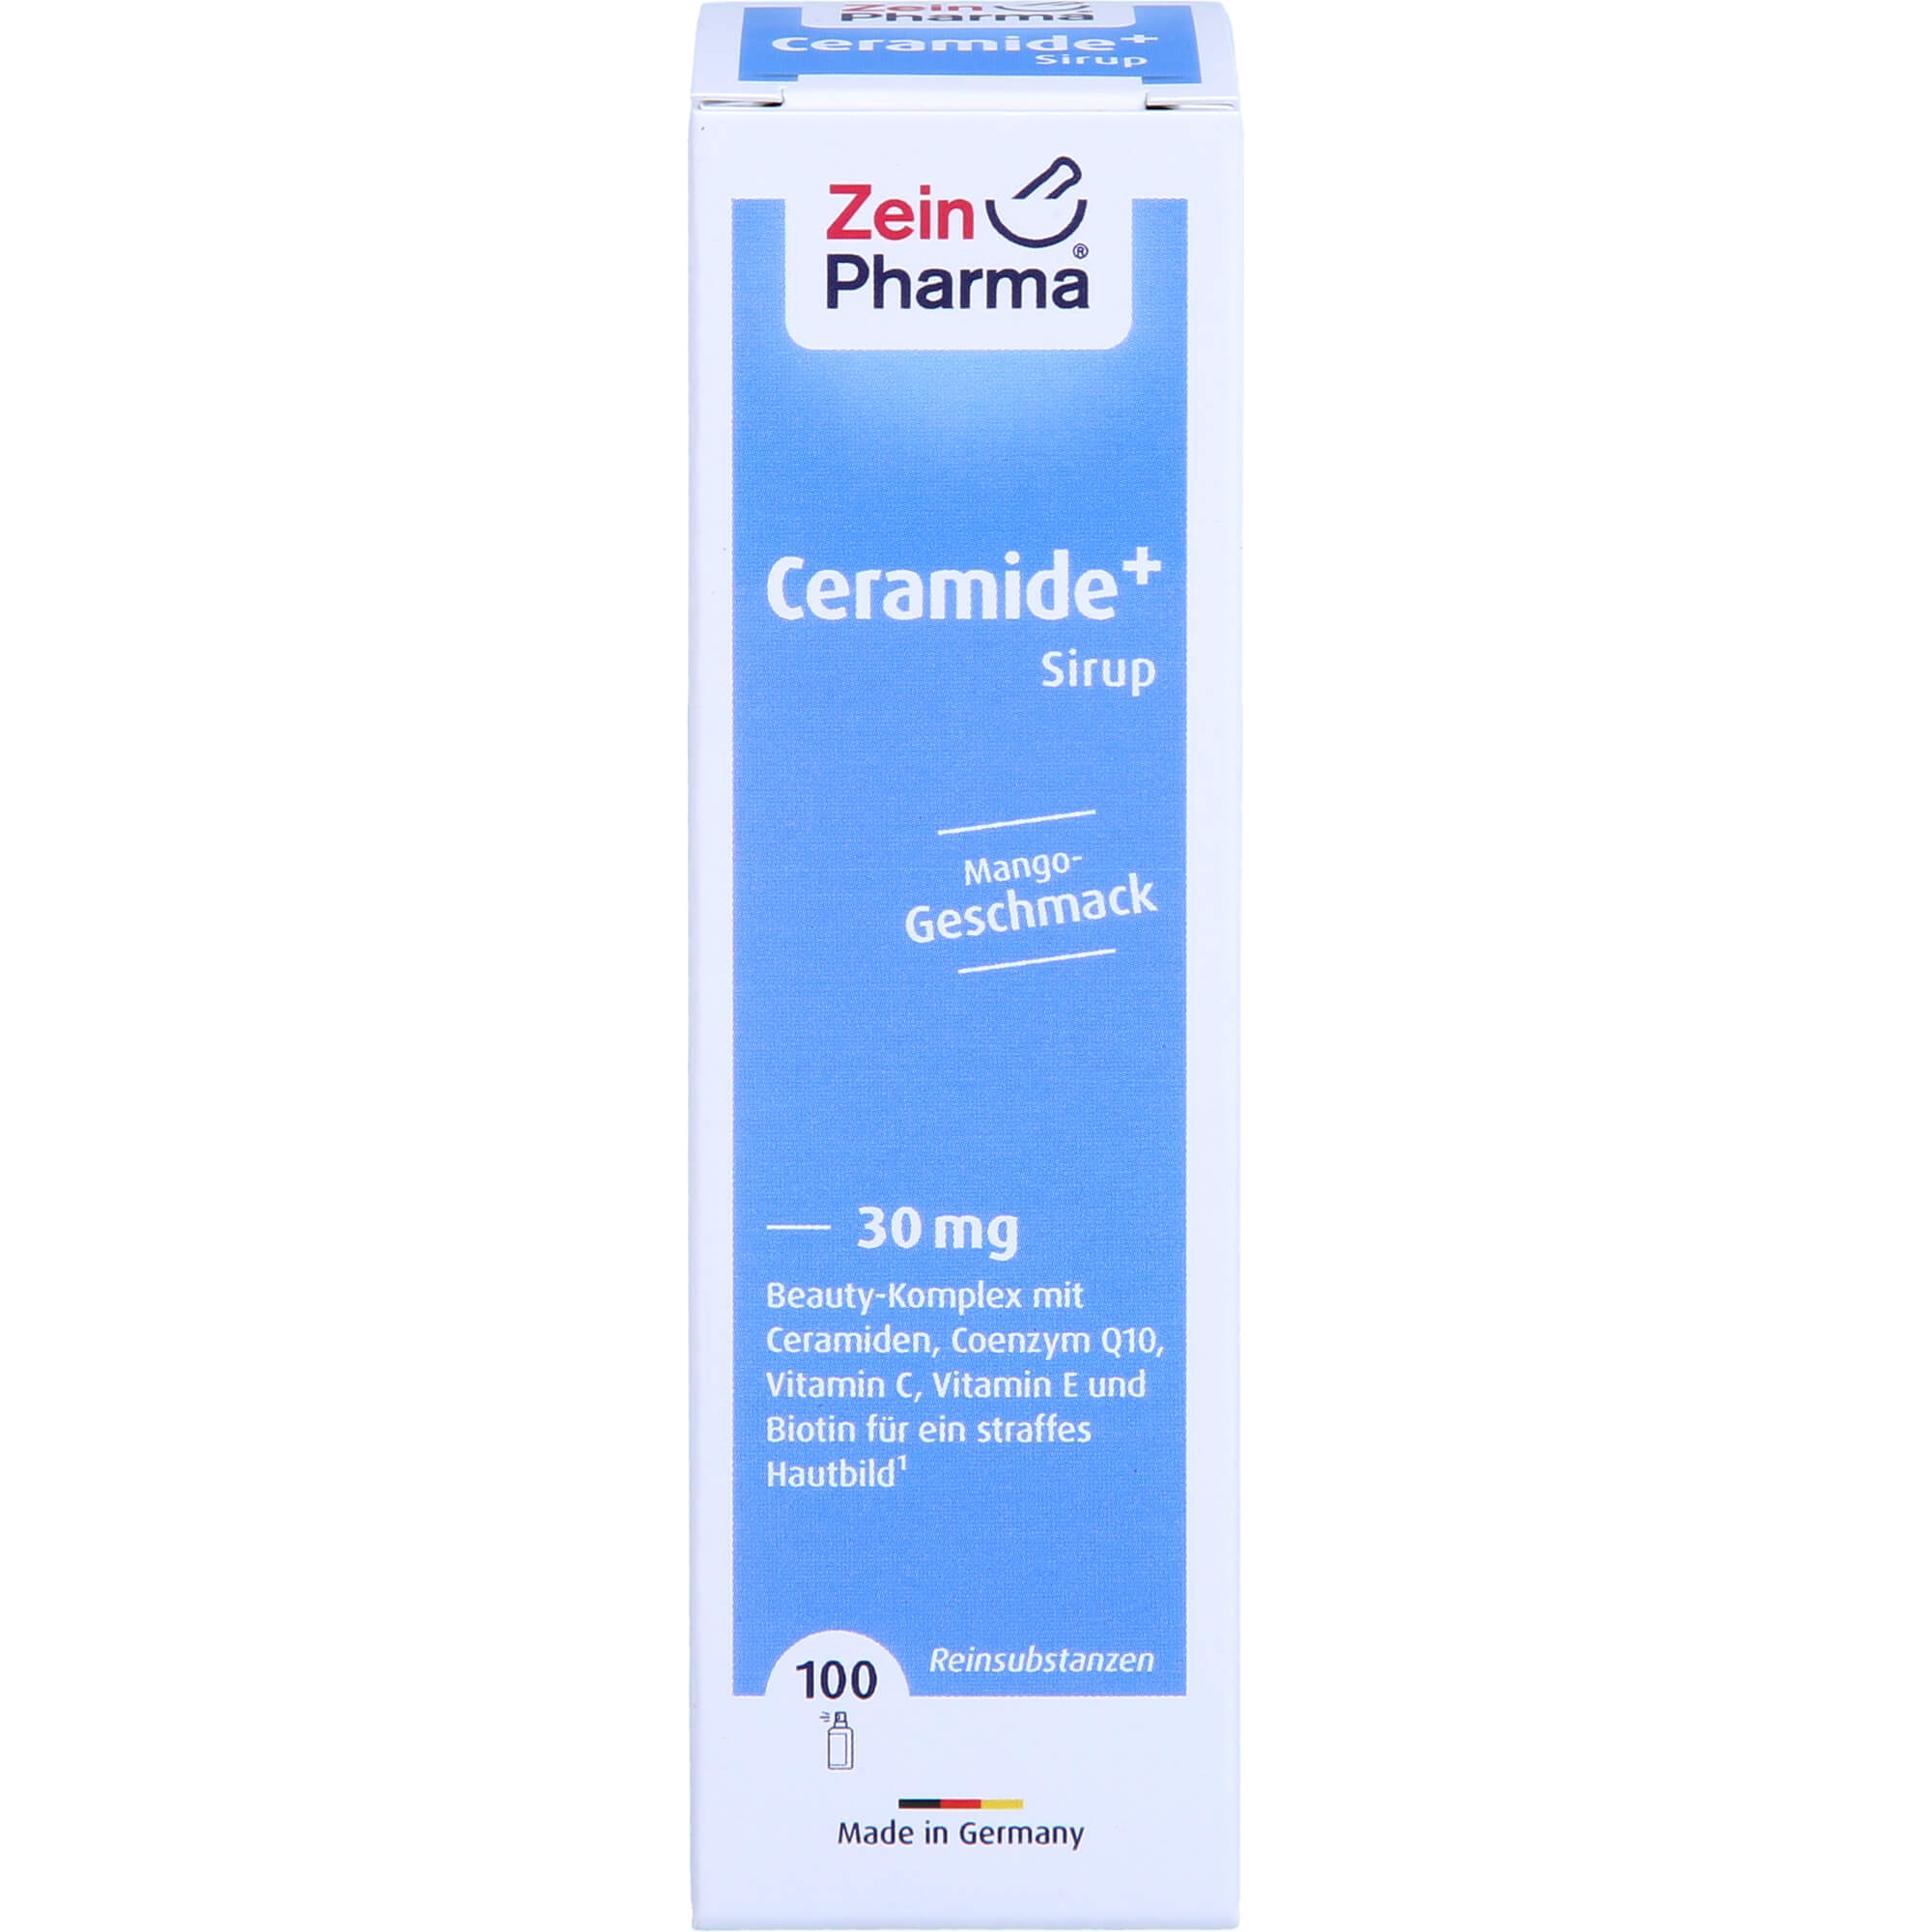 CERAMIDE Plus Biotin & Q10 Spray